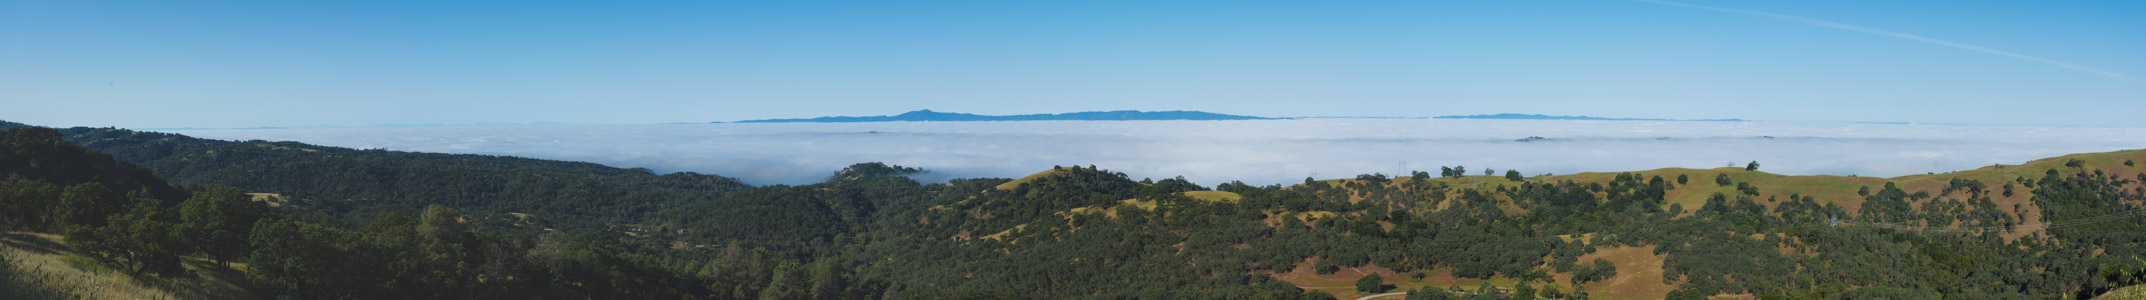 Santa Clara Valley under fog - 5/2015